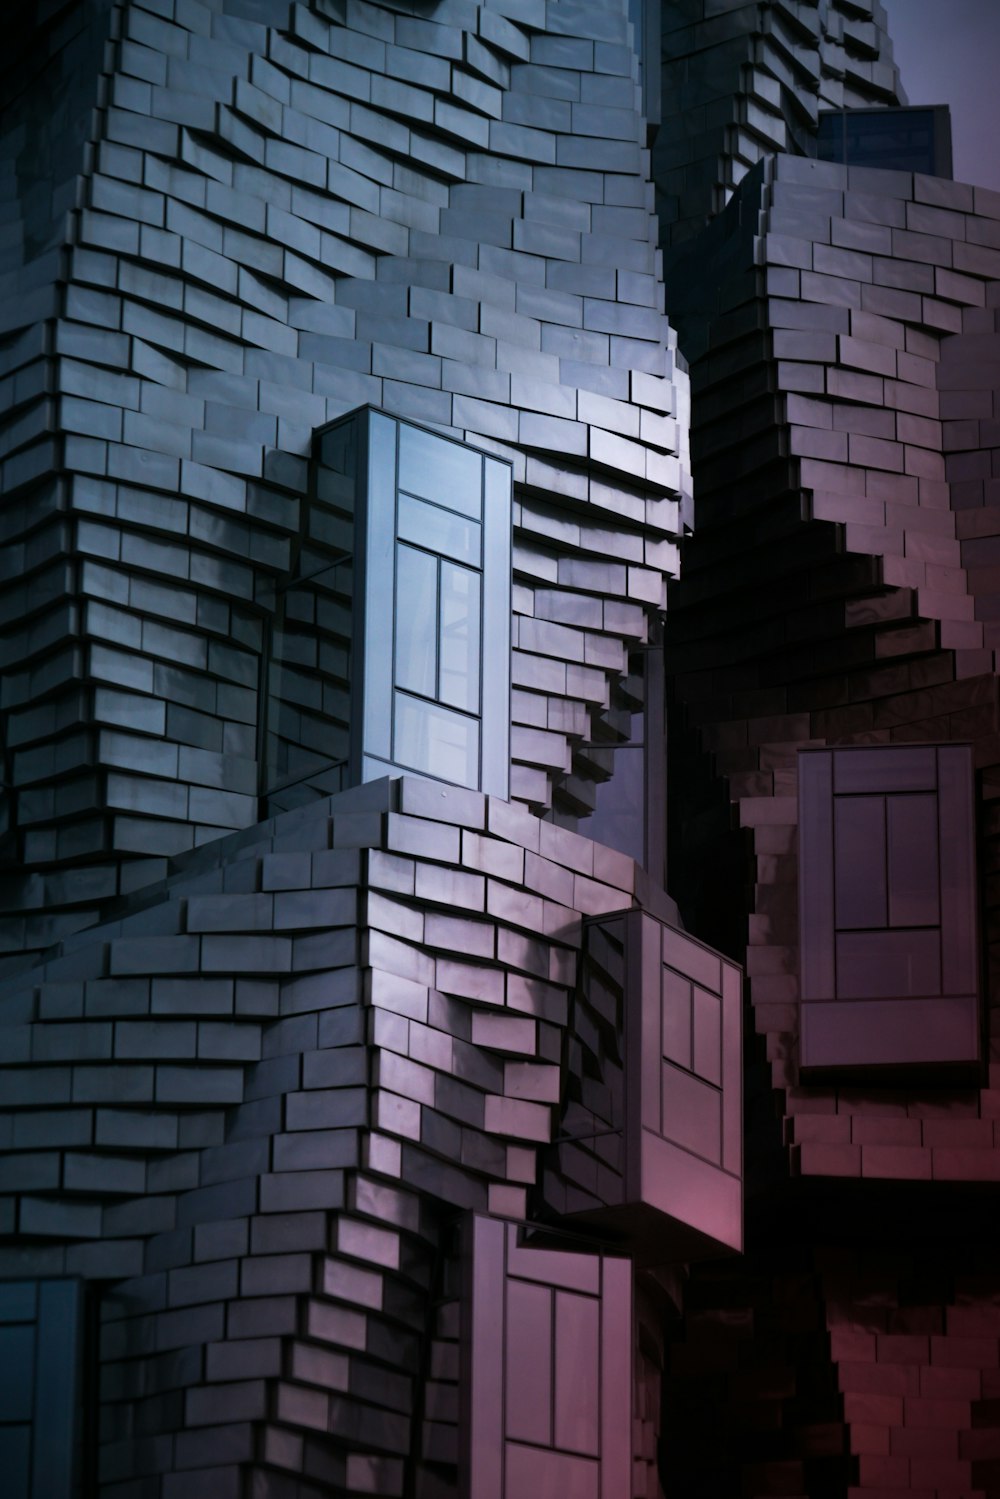 a close up of a building made of bricks